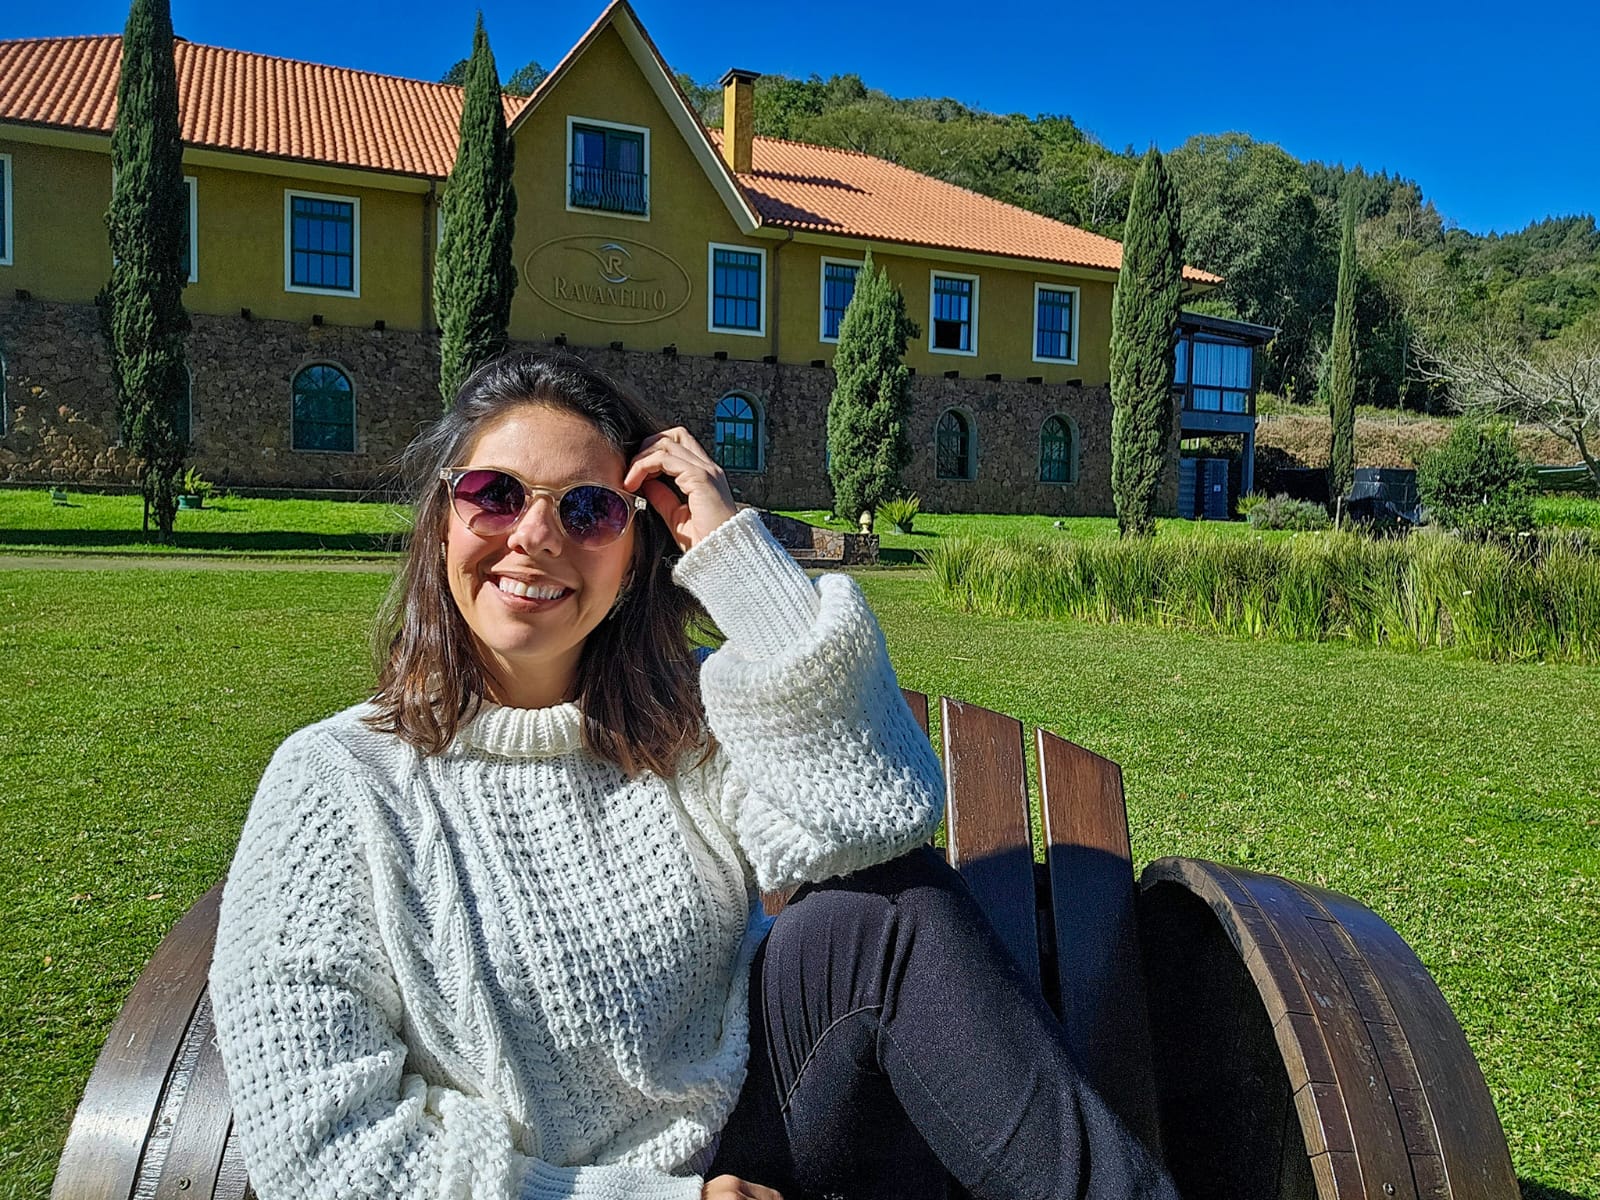 Visita à Vinícola Ravanello, em Gramado - A Nomade